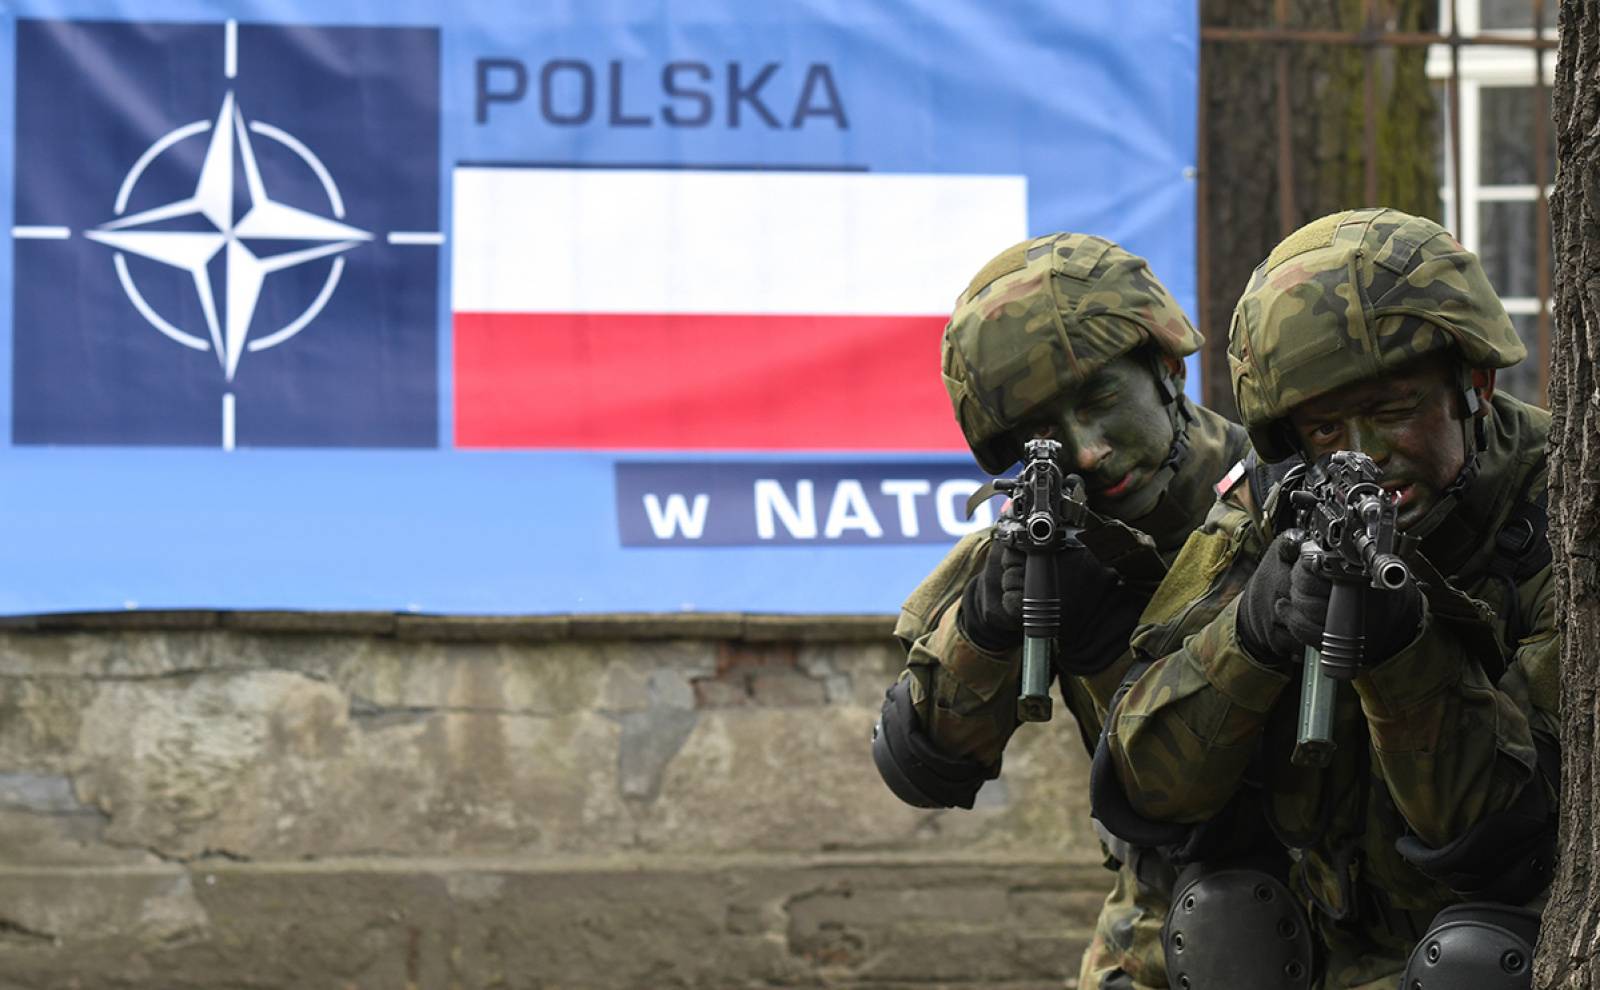  Полша и НАТО 